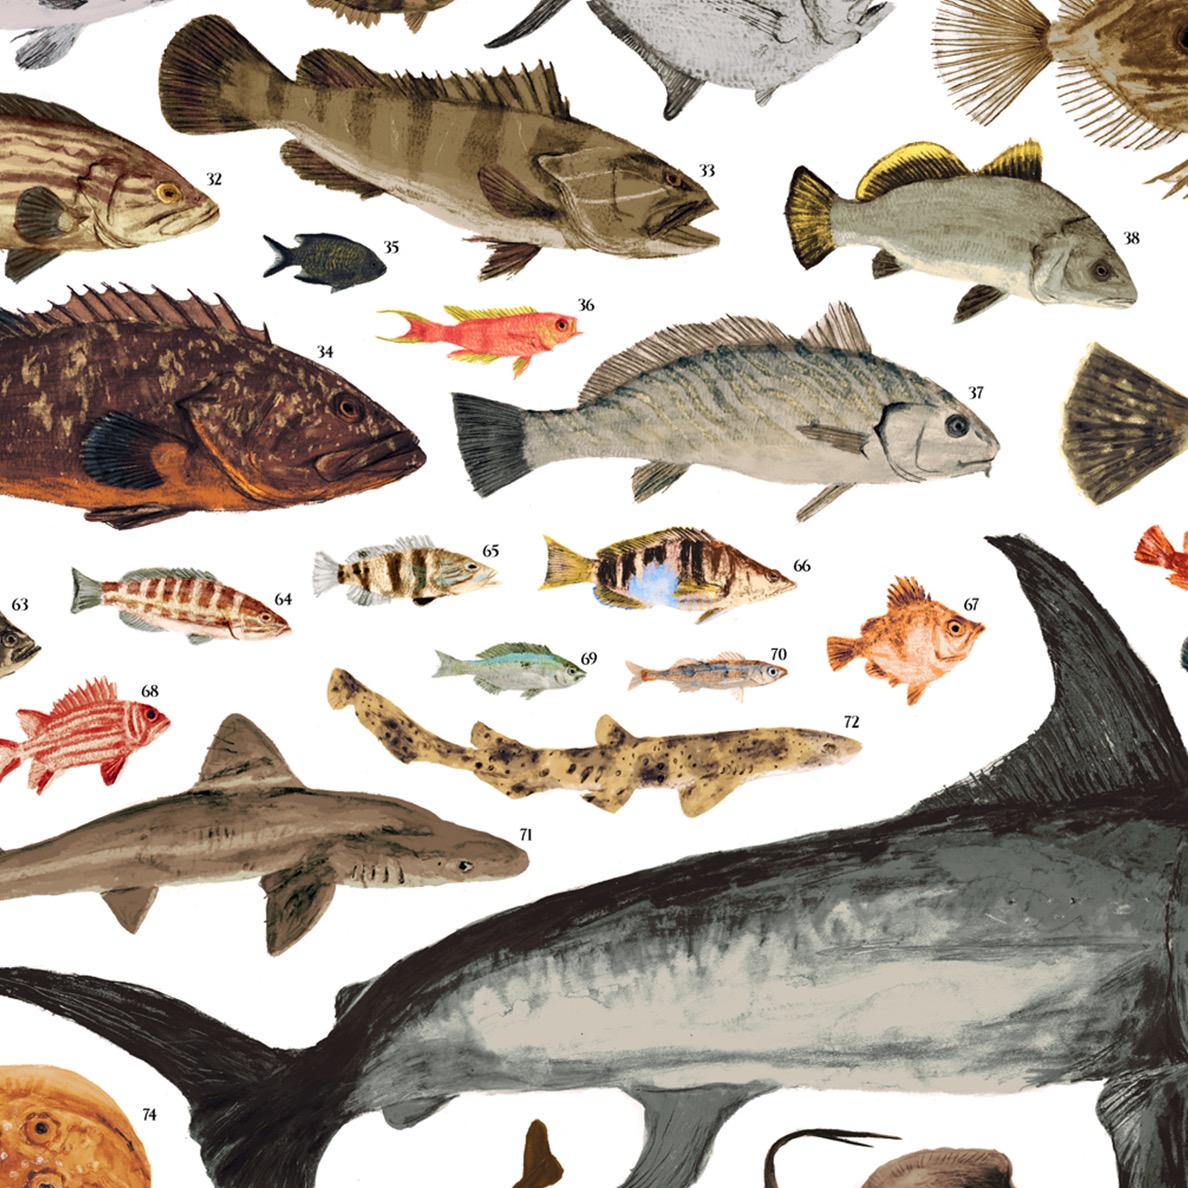 con Articolo in Omaggio 2 aste Nere Empire Interactive Soggetto: I Pesci del Mediterraneo Poster 